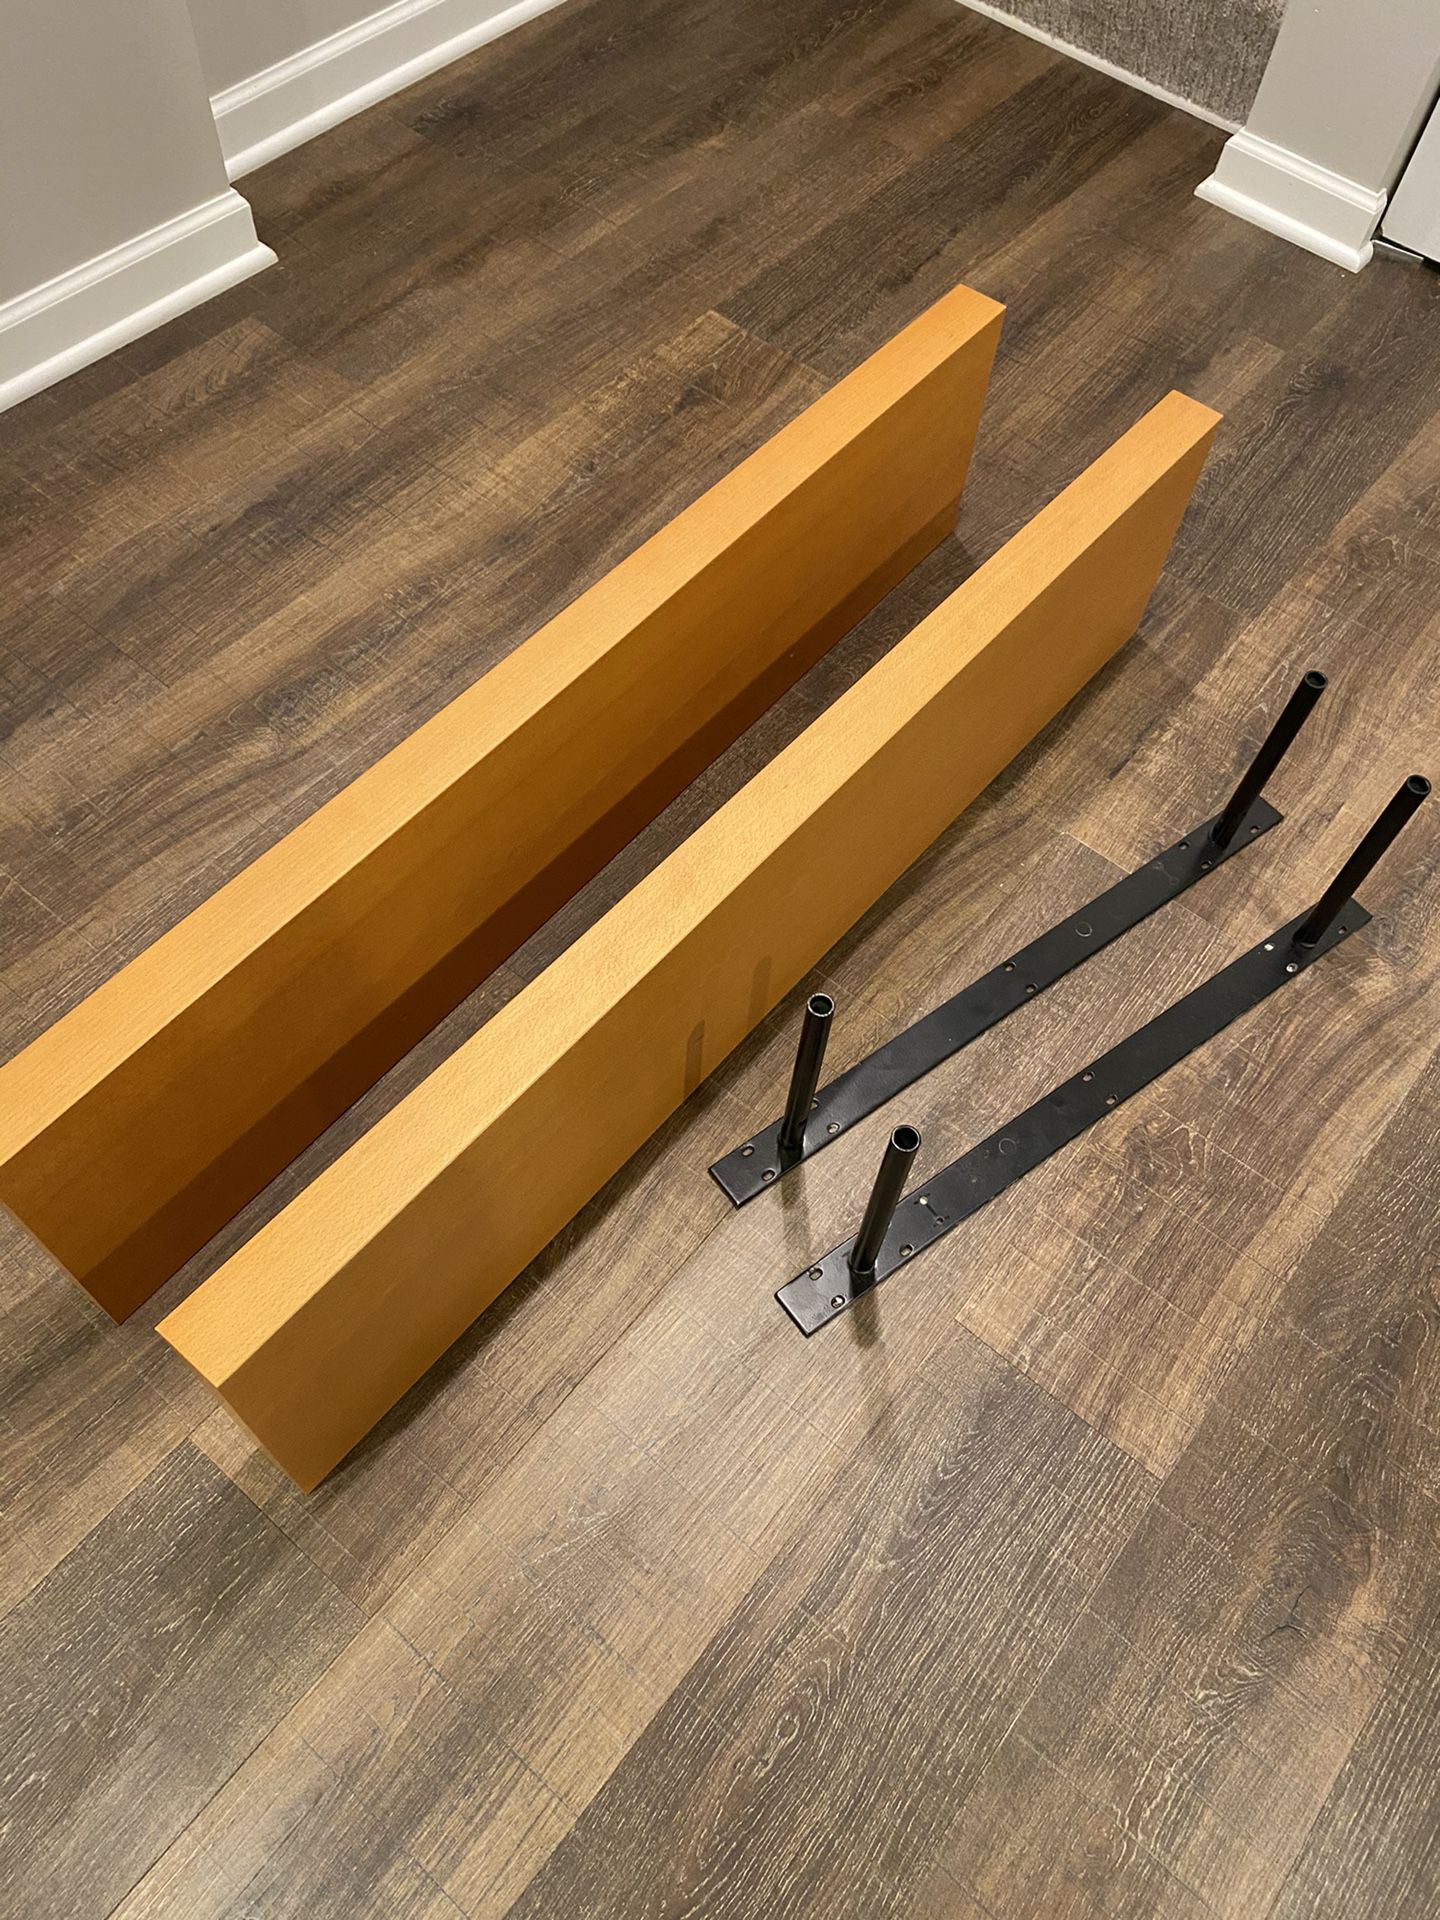 IKEA Floating shelves (qty 2) - 43”x 10” x 2”